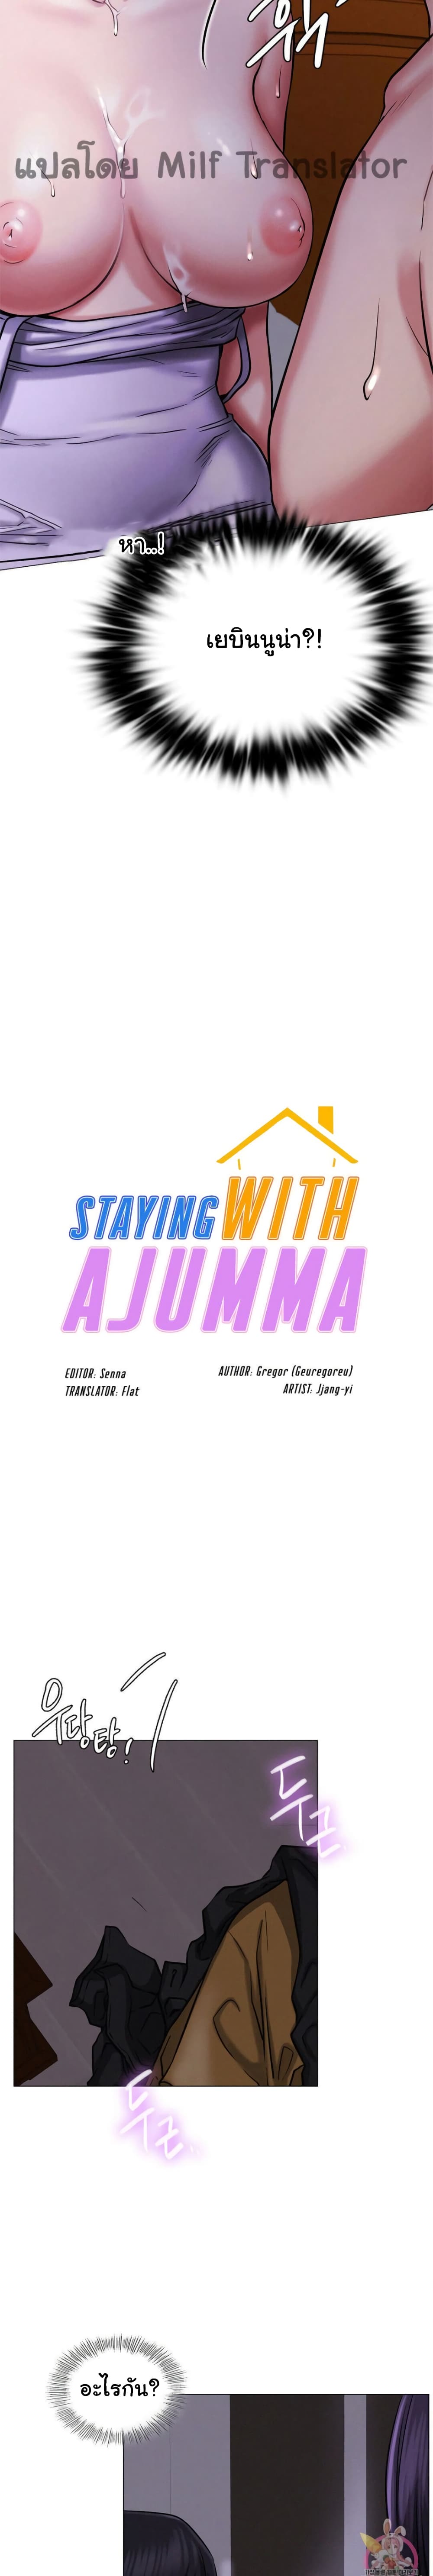 Staying with Ajumma 8 02